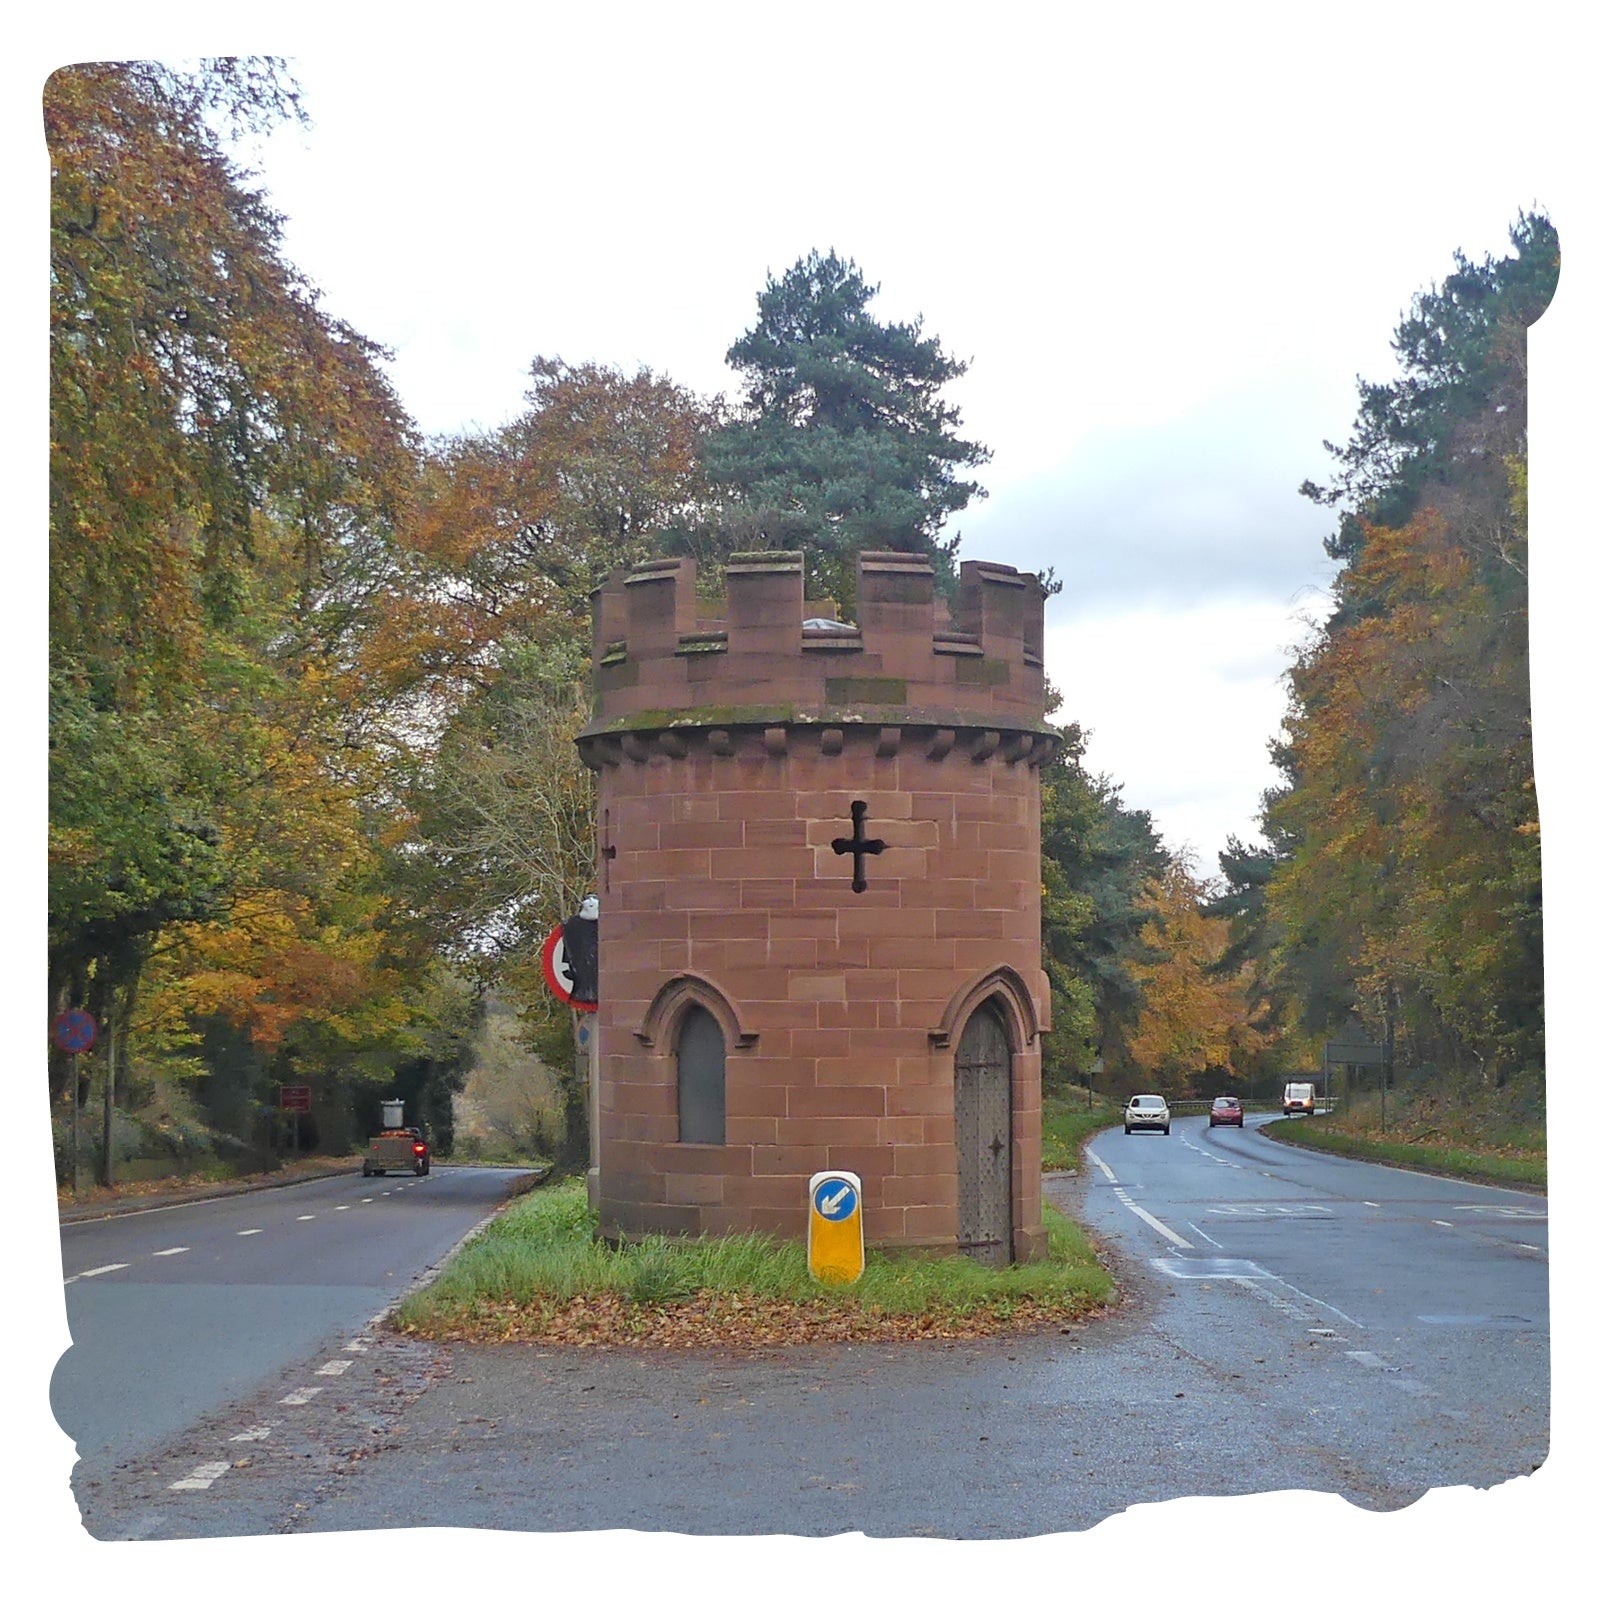 TW Round Tower Sandiway Cheshire